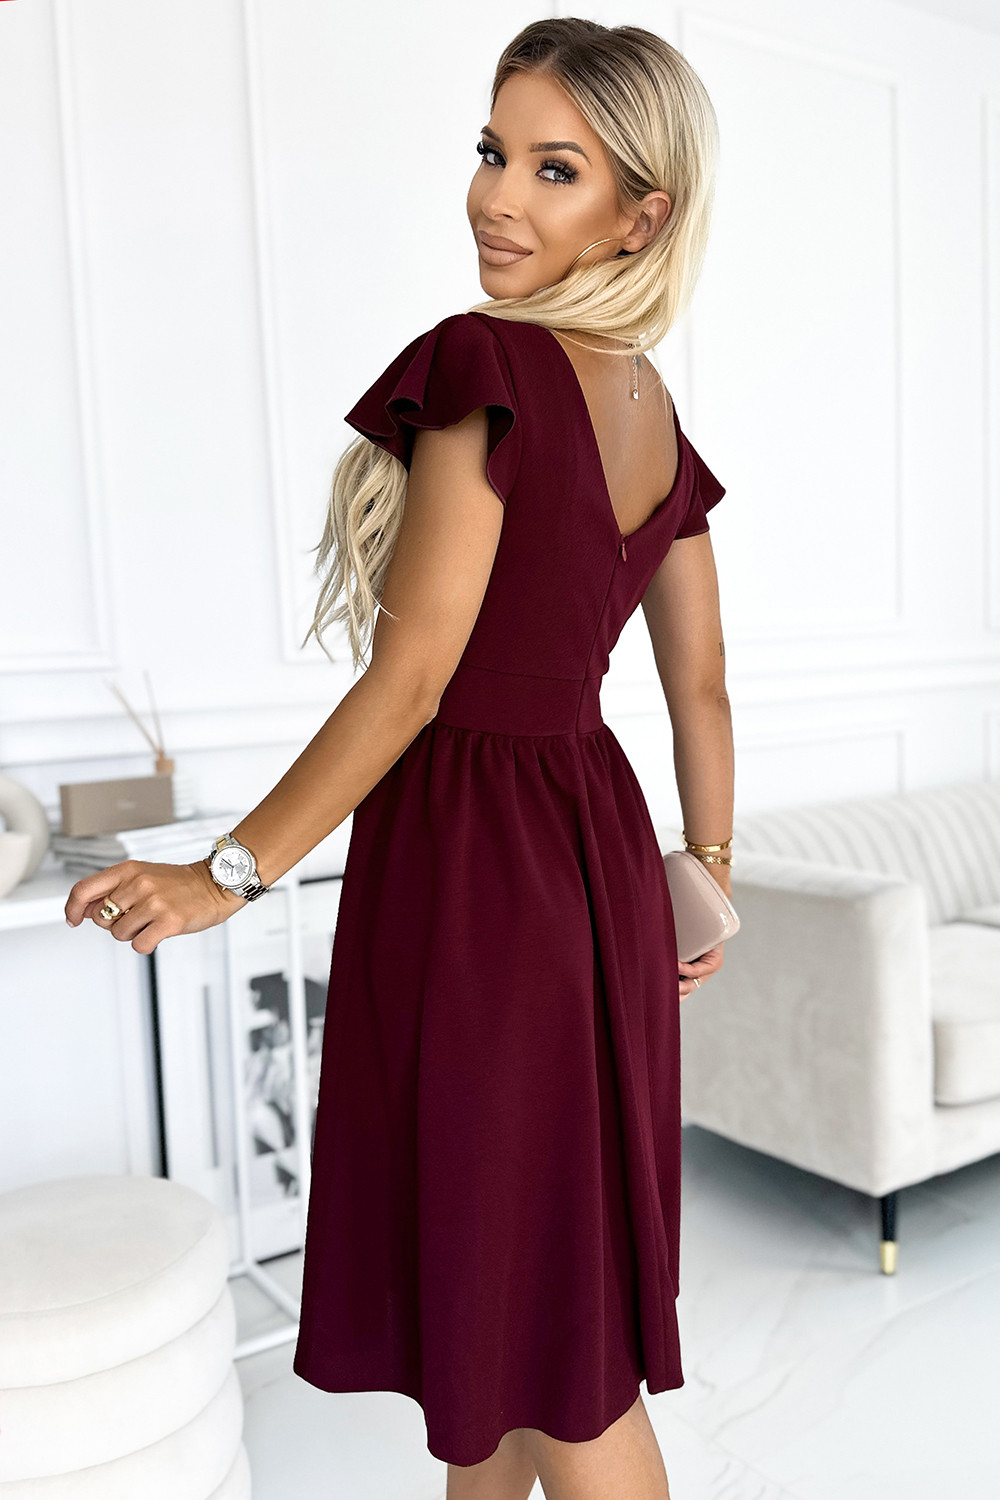 MATILDE - Dámské šaty ve vínové bordó barvě s výstřihem a krátkými rukávy 425-4 S